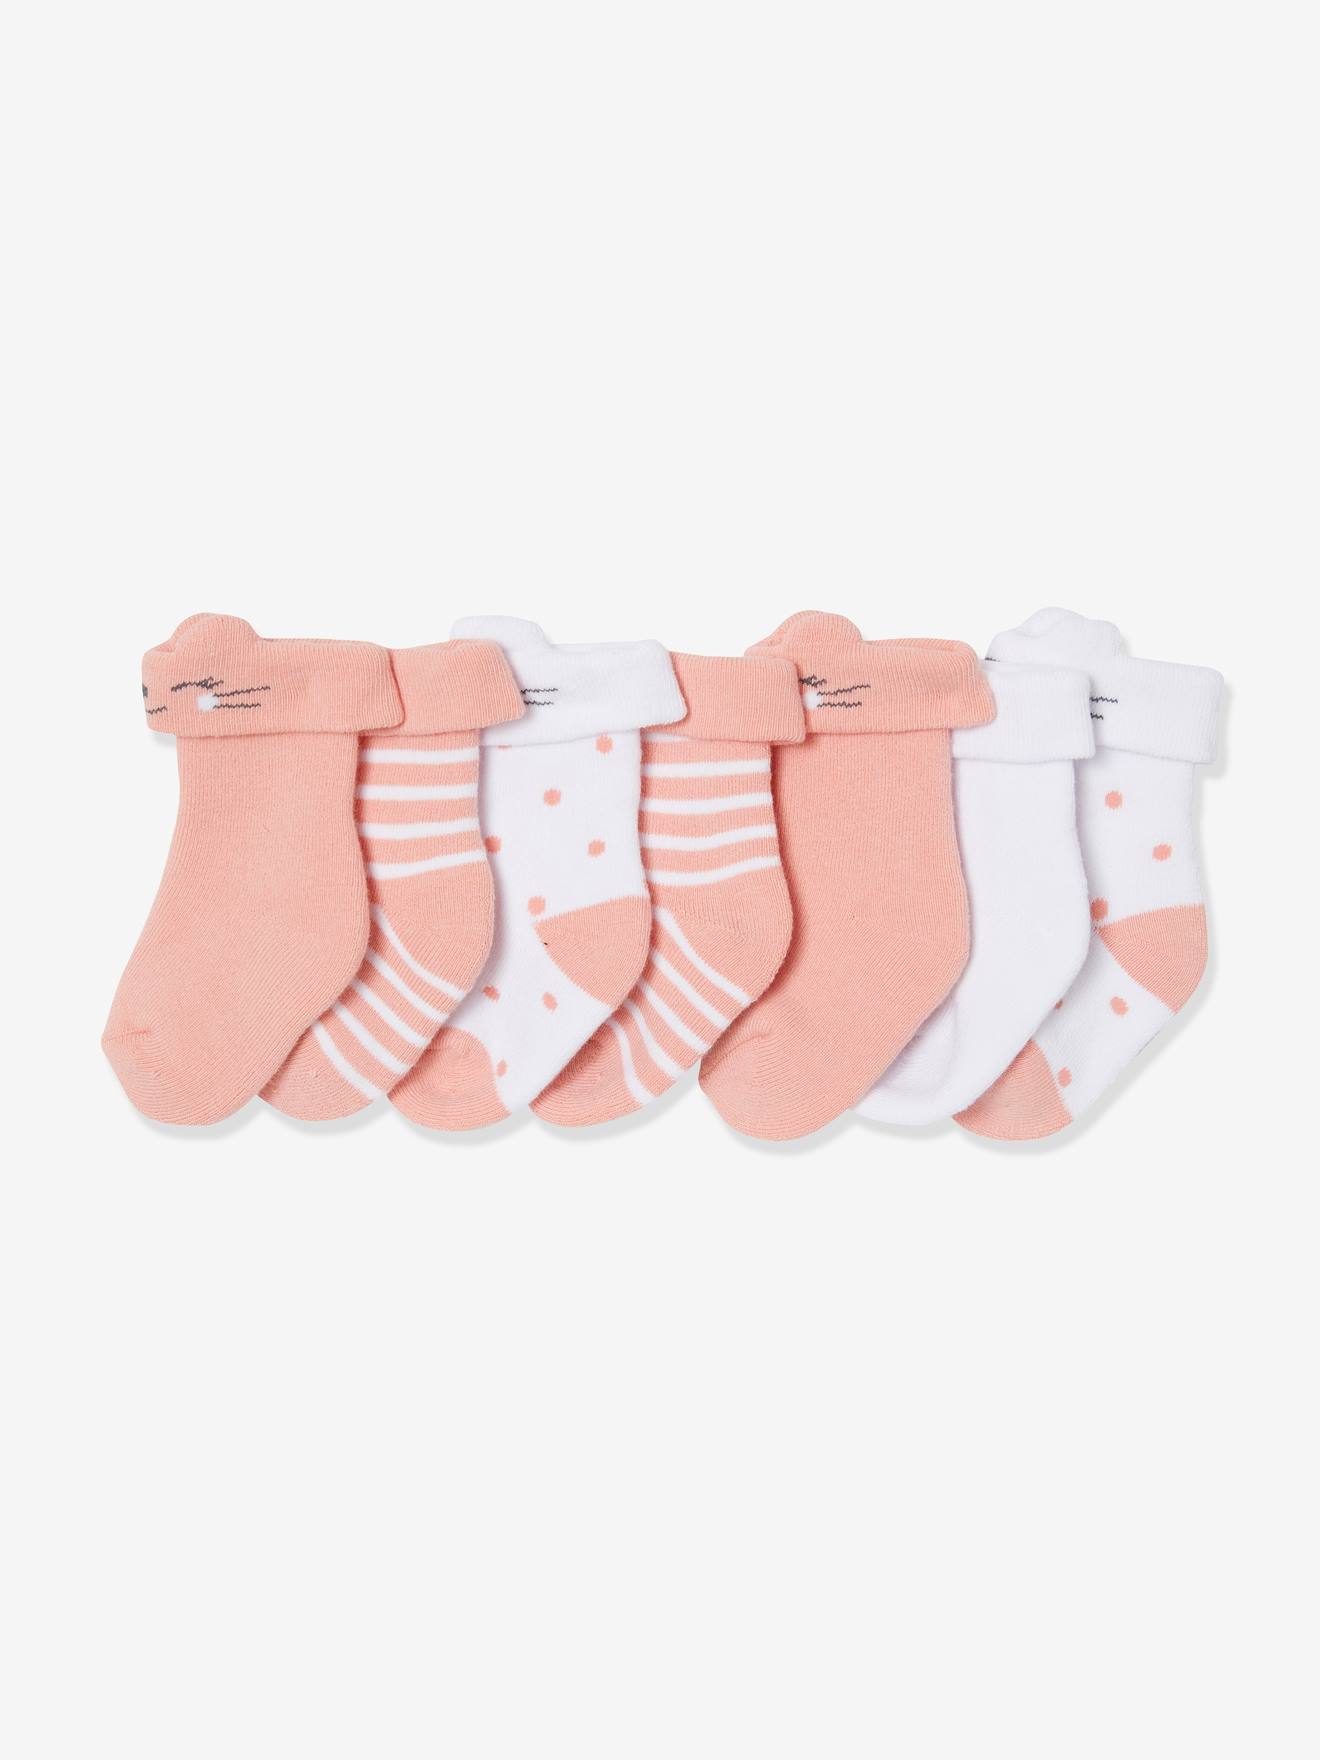 Lote de 7 pares de meias, malha borboto, para bebé rosa claro bicolor/multicolor